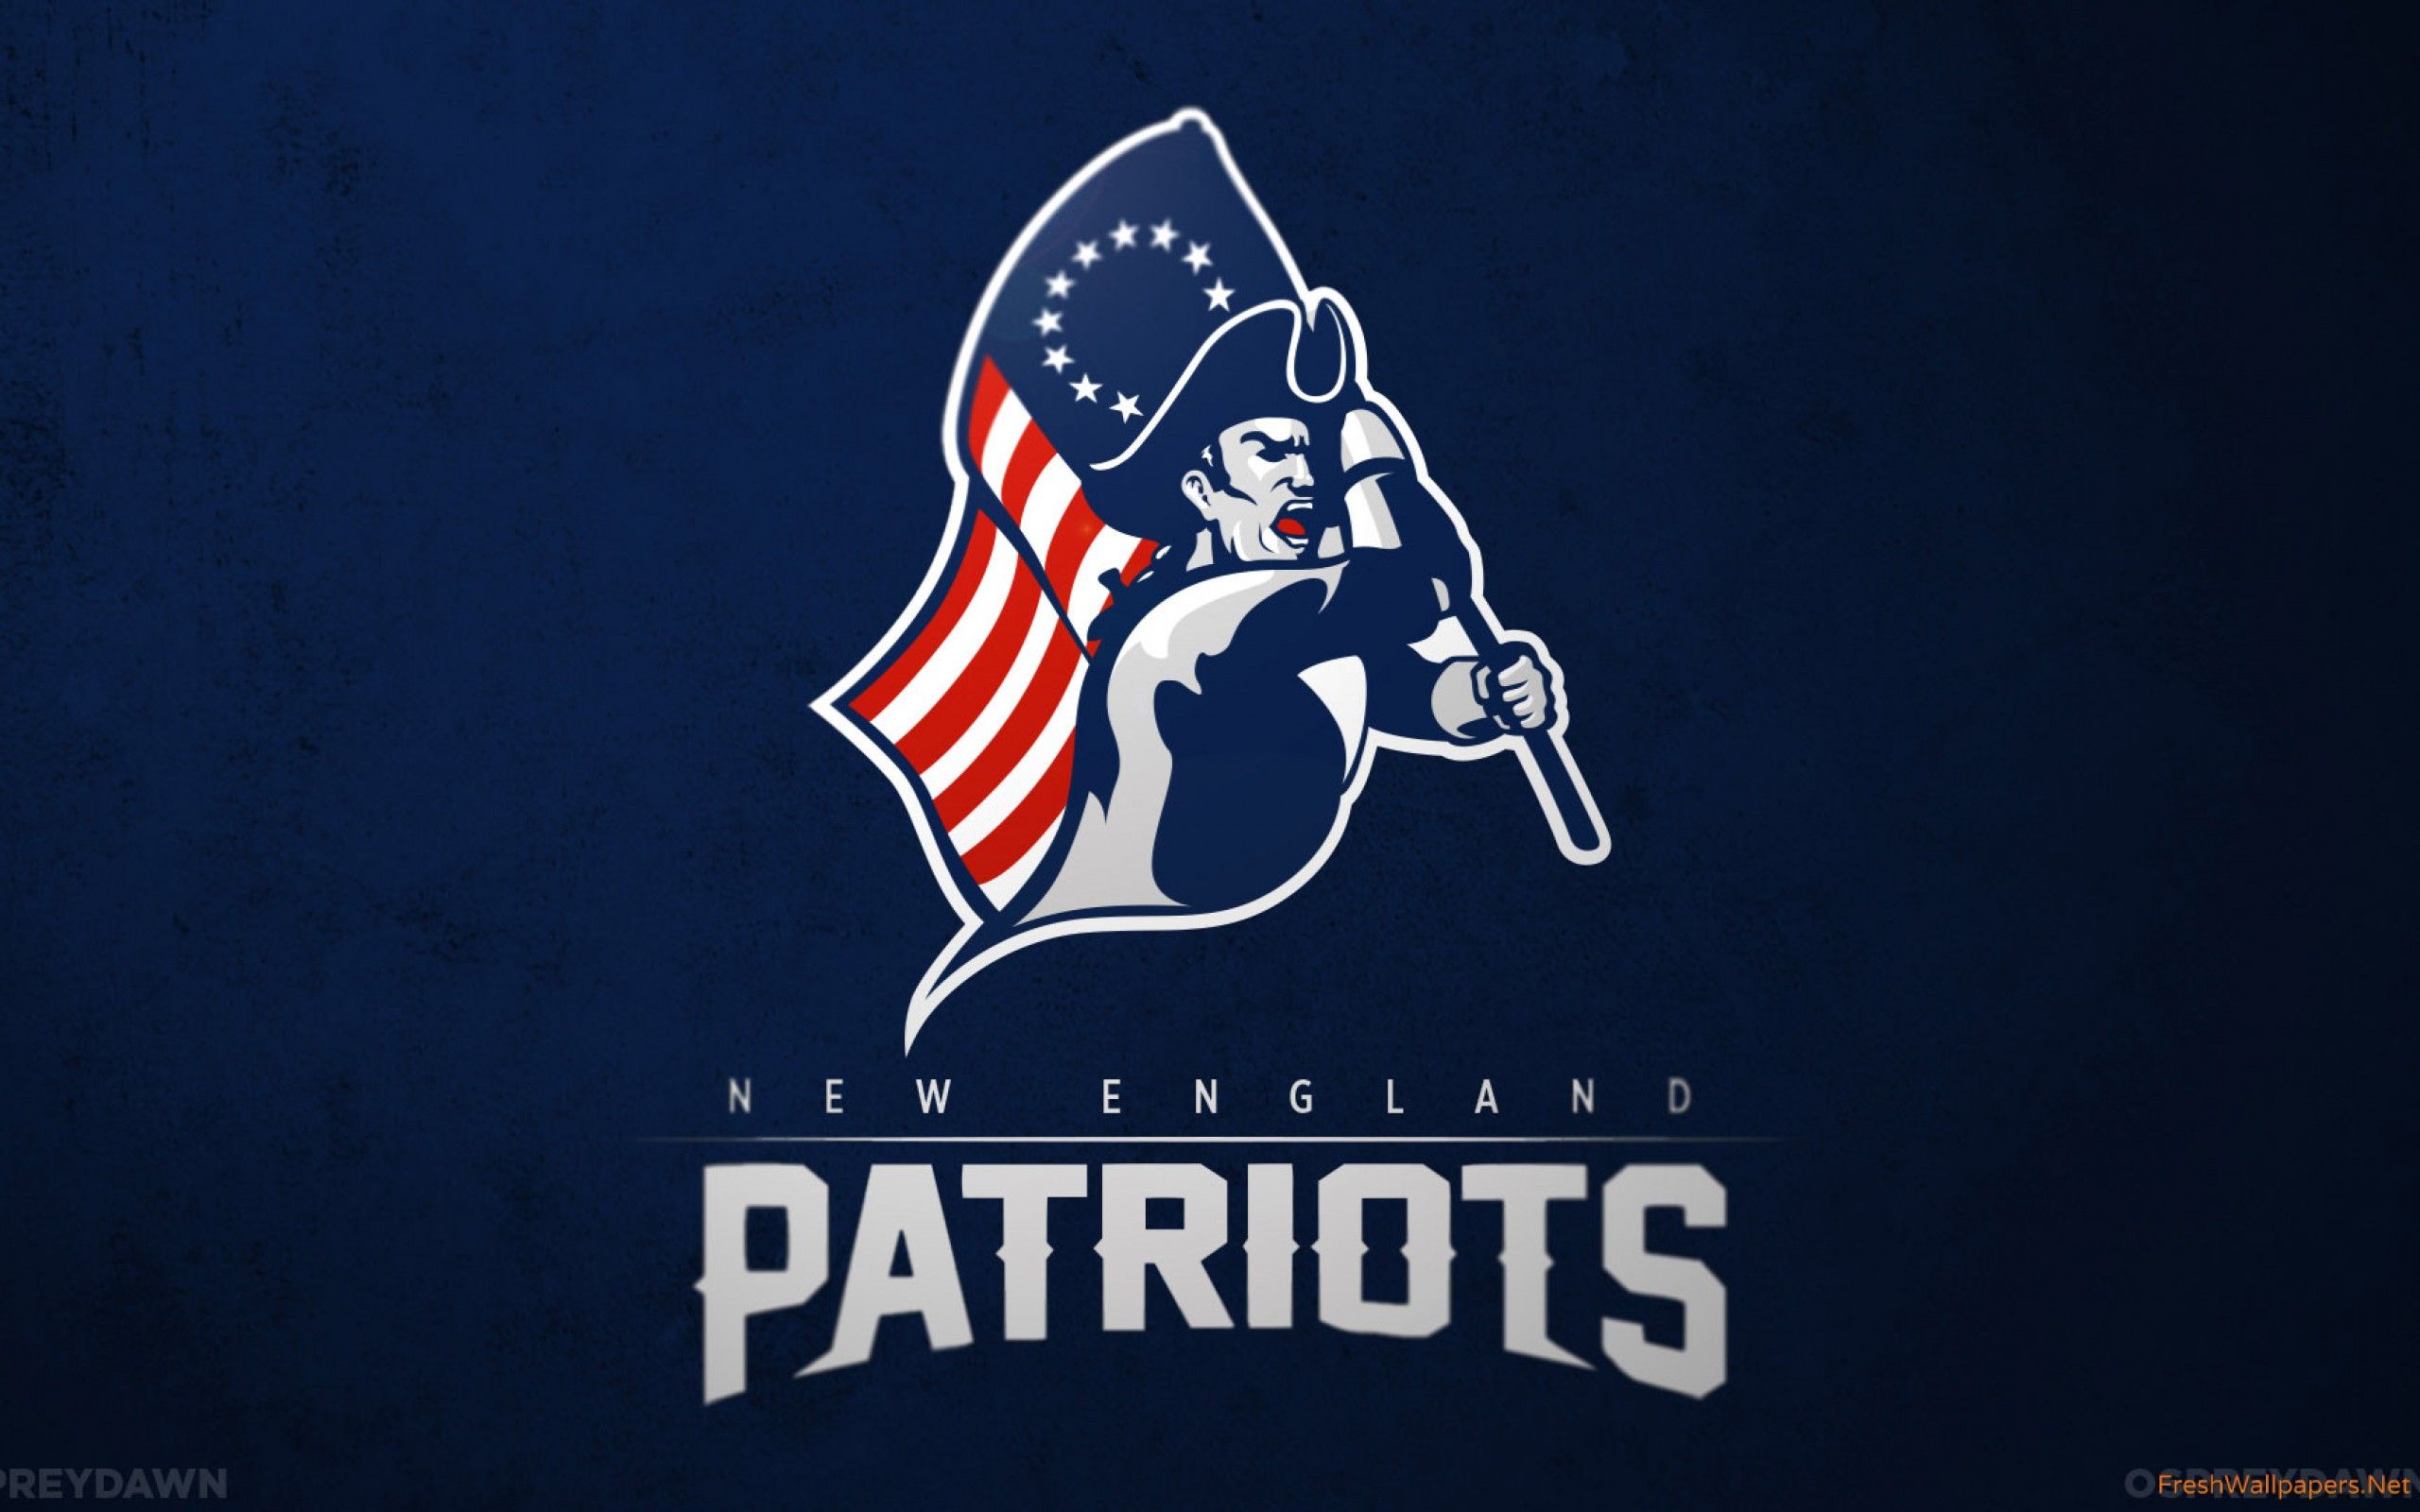 Patriotic - New England Patriots Wallpaper Hd , HD Wallpaper & Backgrounds